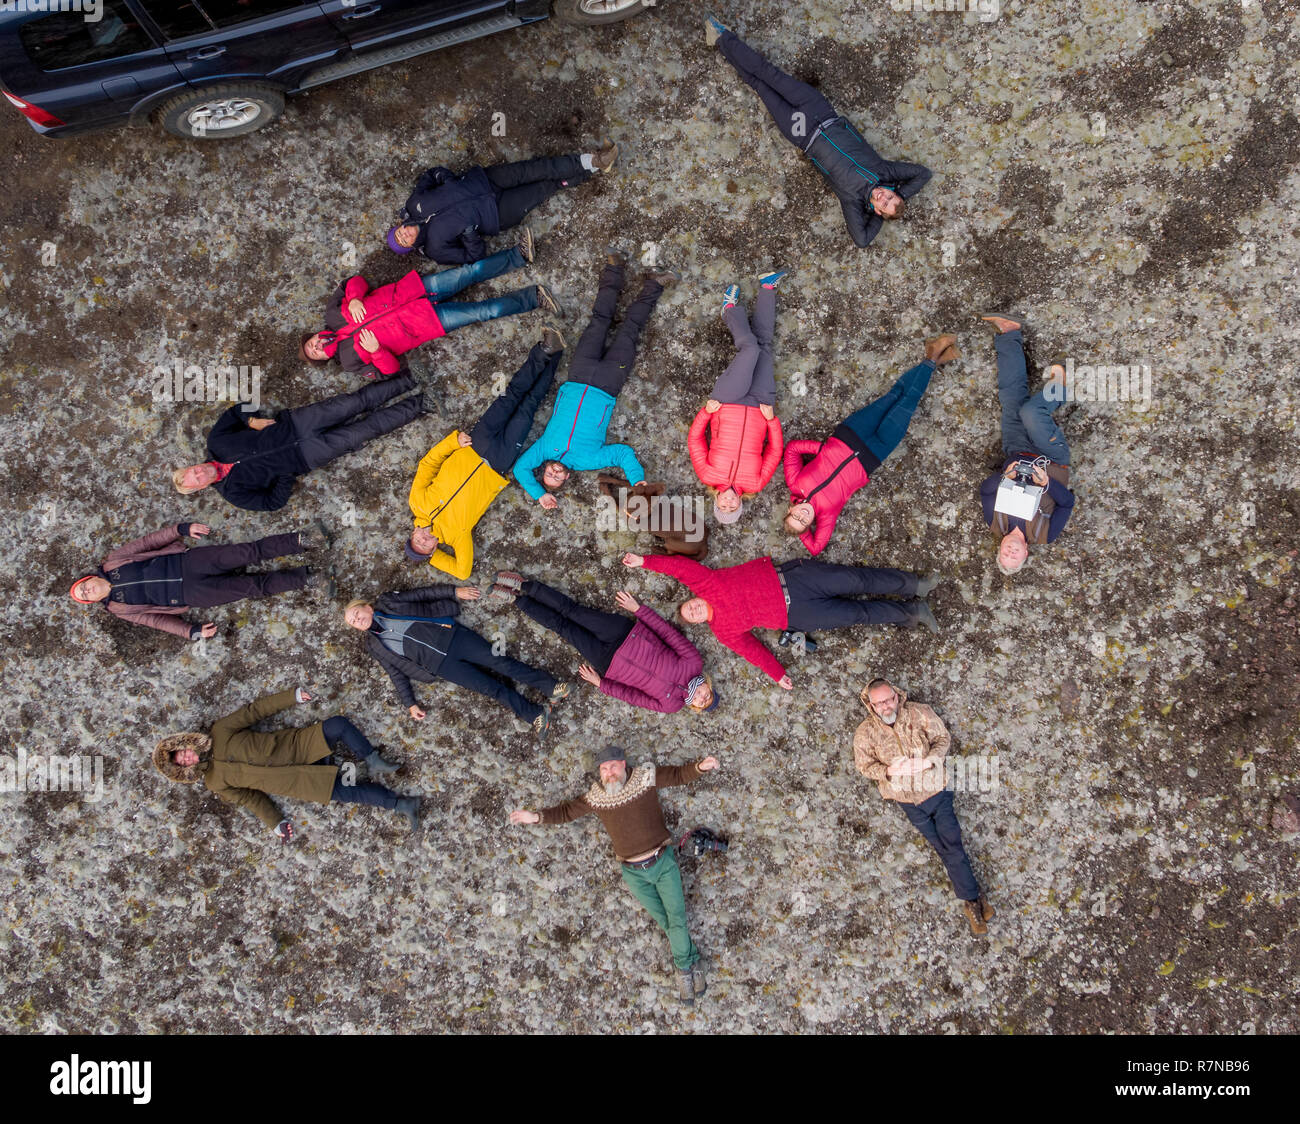 Fotografen mit einer Drohne ein Bild von einer Gruppe von Freunden auf einem jeep tour zu nehmen, Central Highlands, Island Stockfoto